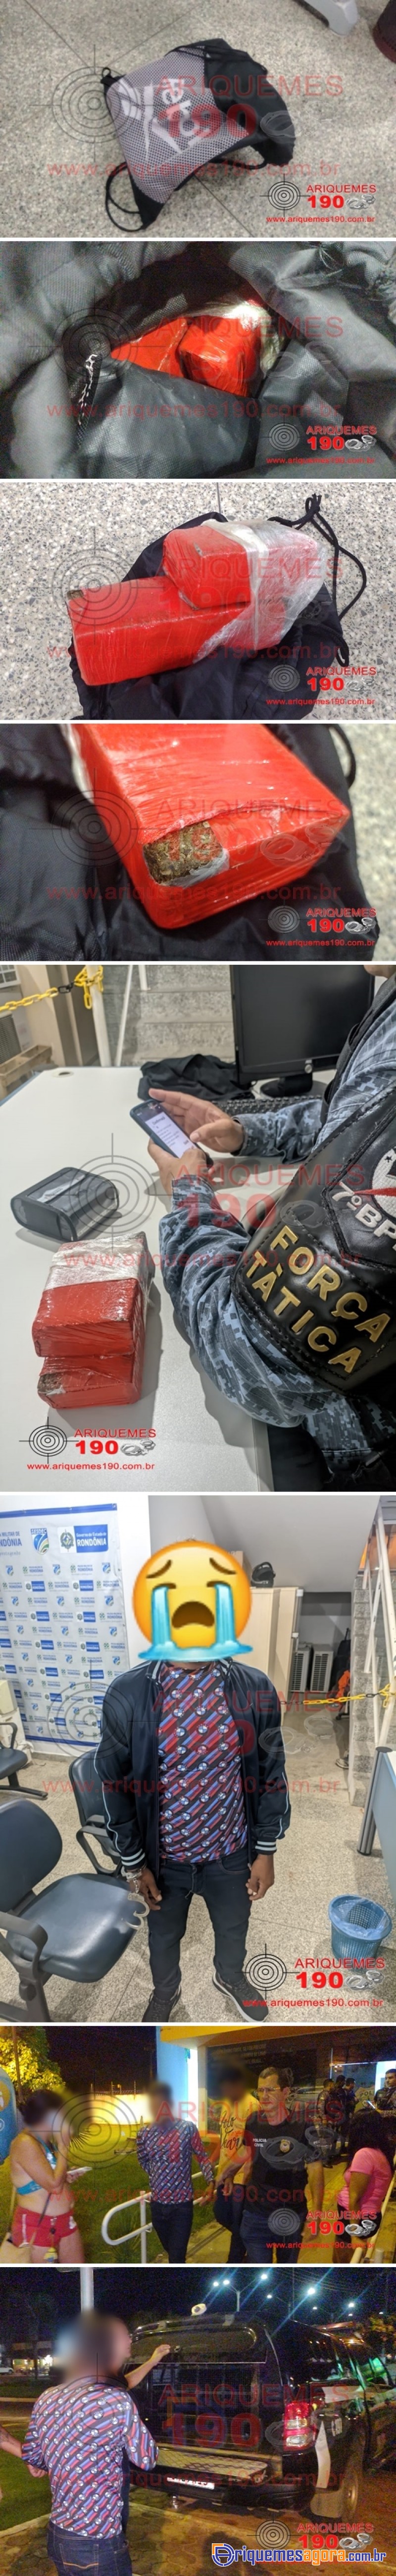 PEGO NO PULO: Homem é preso na rodoviária de Ariquemes com quase 1kg de entorpecentes